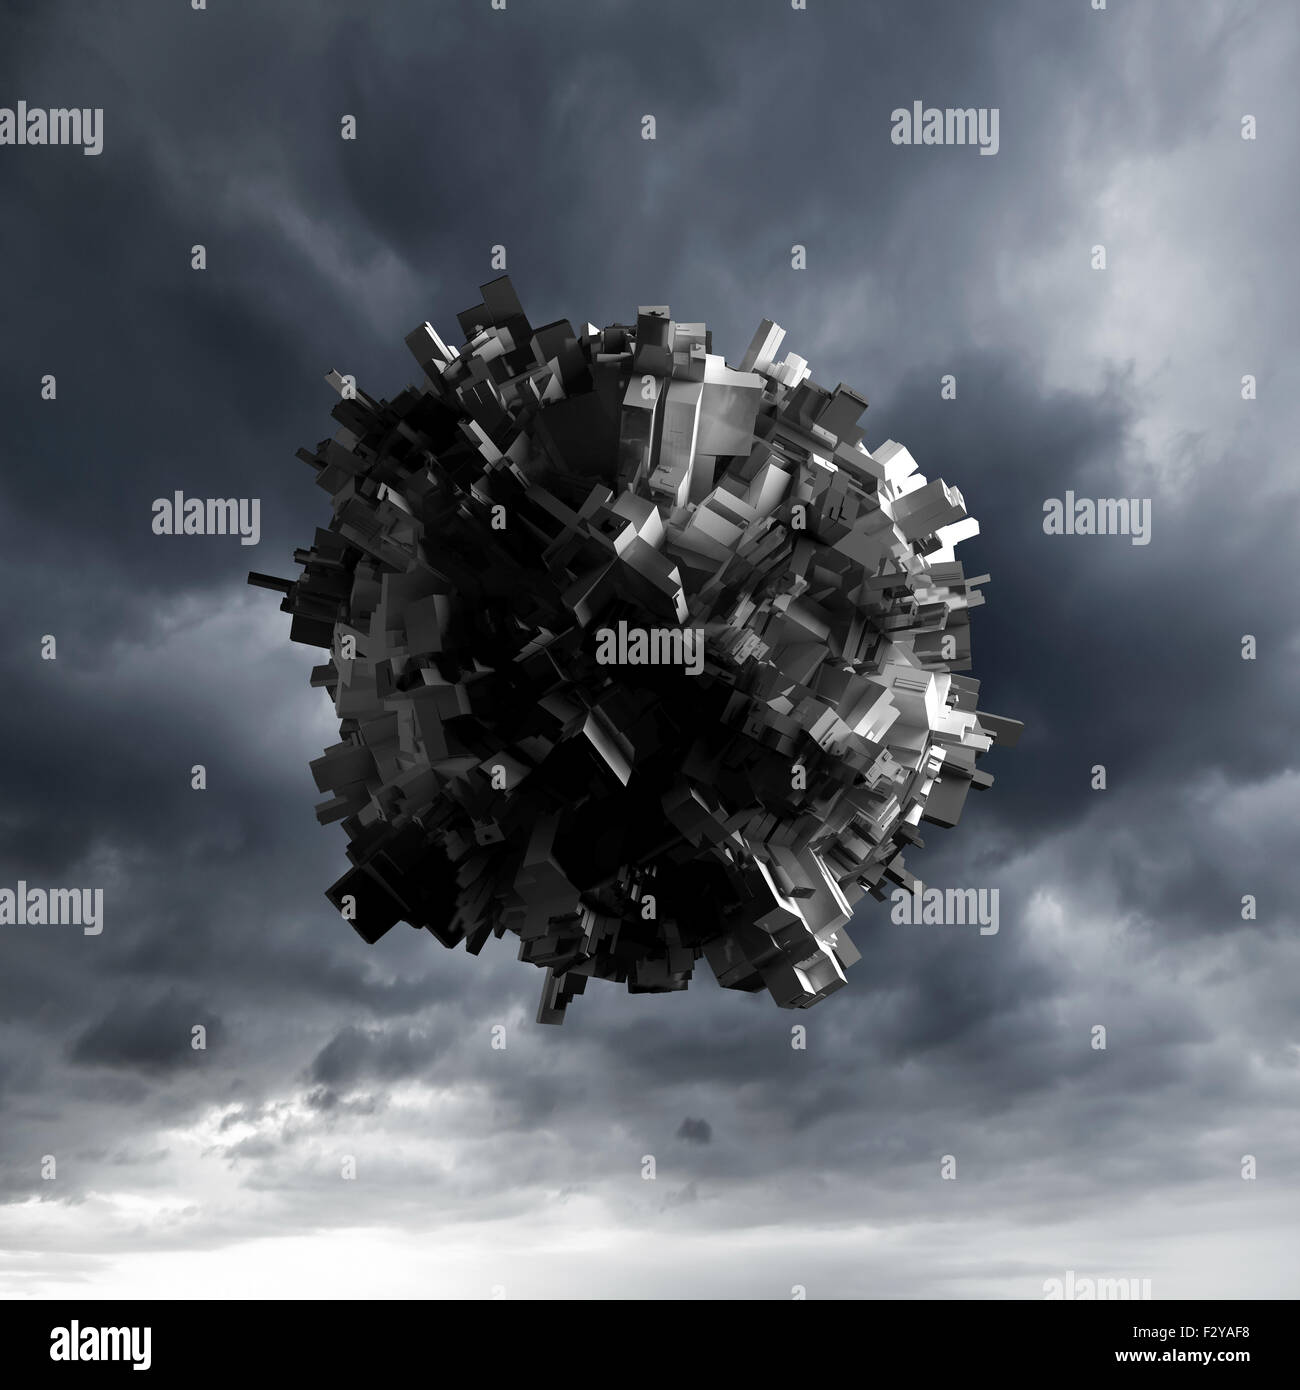 Abstrakte sphärische Flugobjekt mit chaotischen extrudierte Fläche über dunkel bewölkter Himmel, 3d illustration Stockfoto